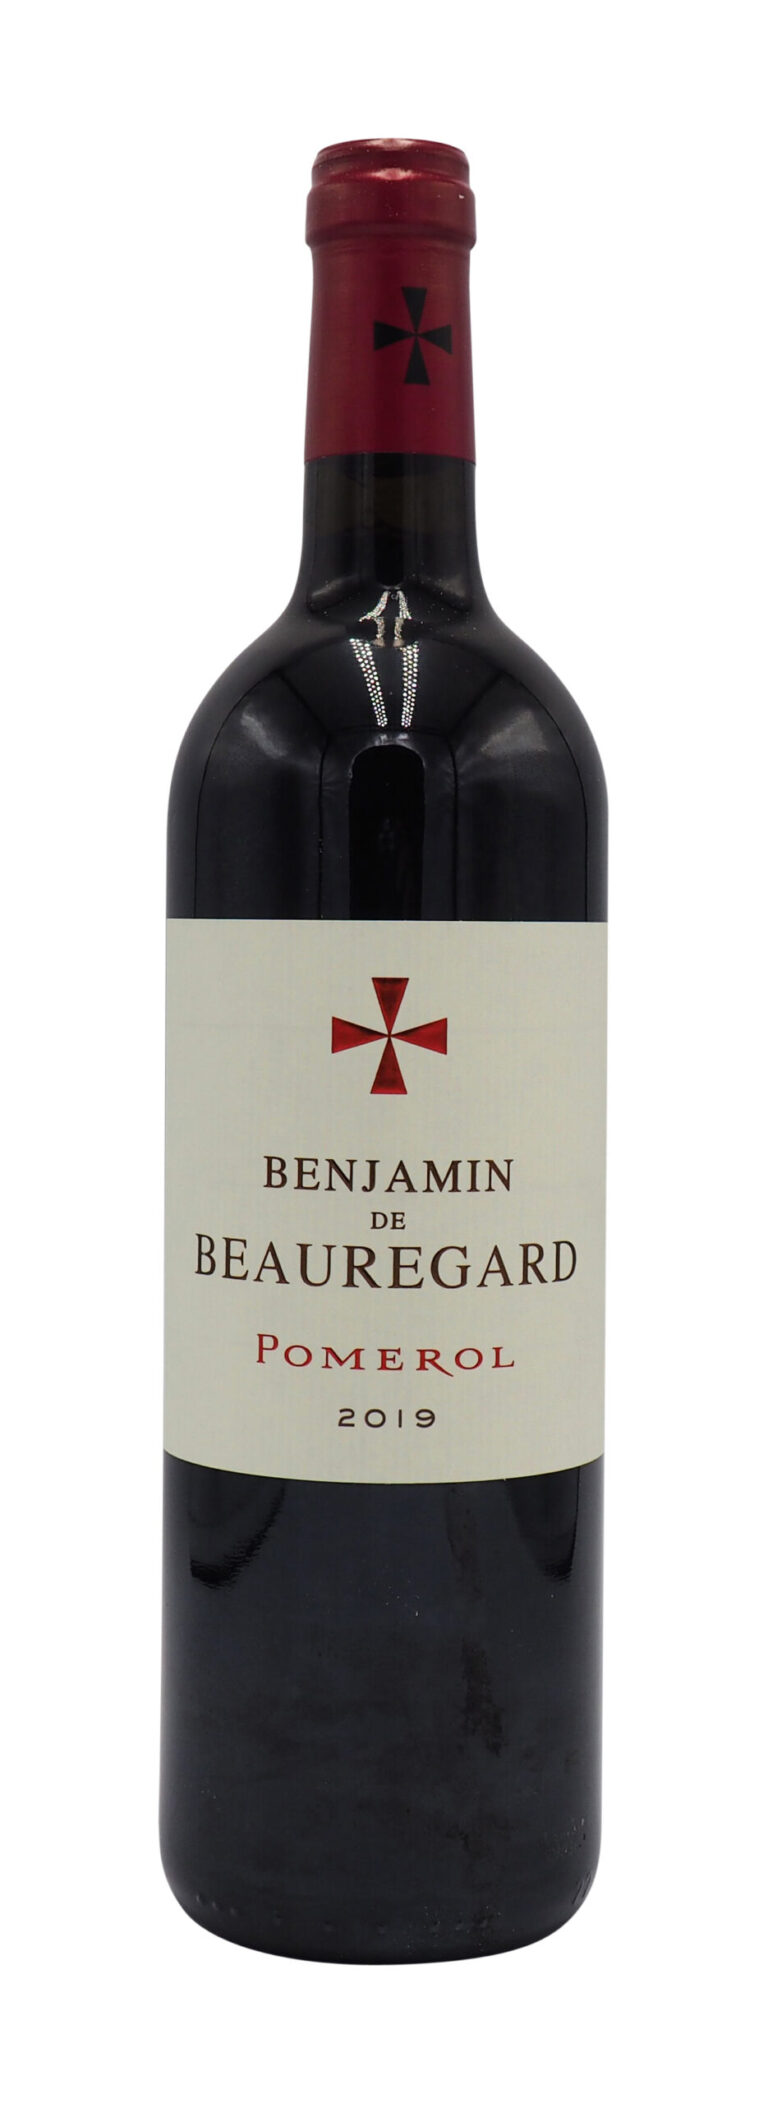 Benjamin de Beauregard Pomerol 2015